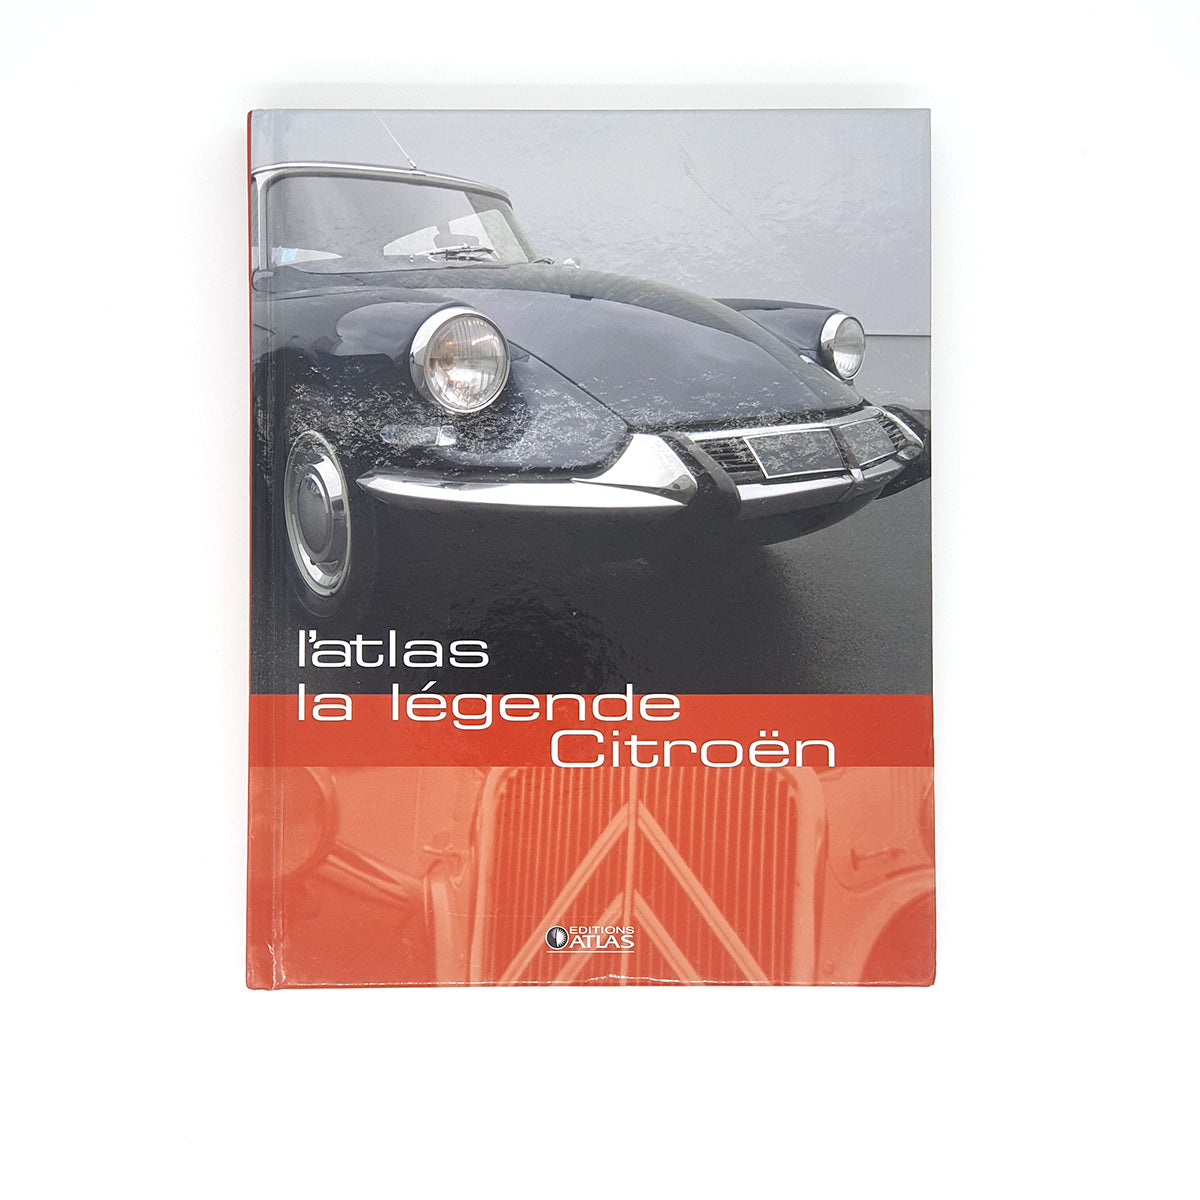 La légende Citroën